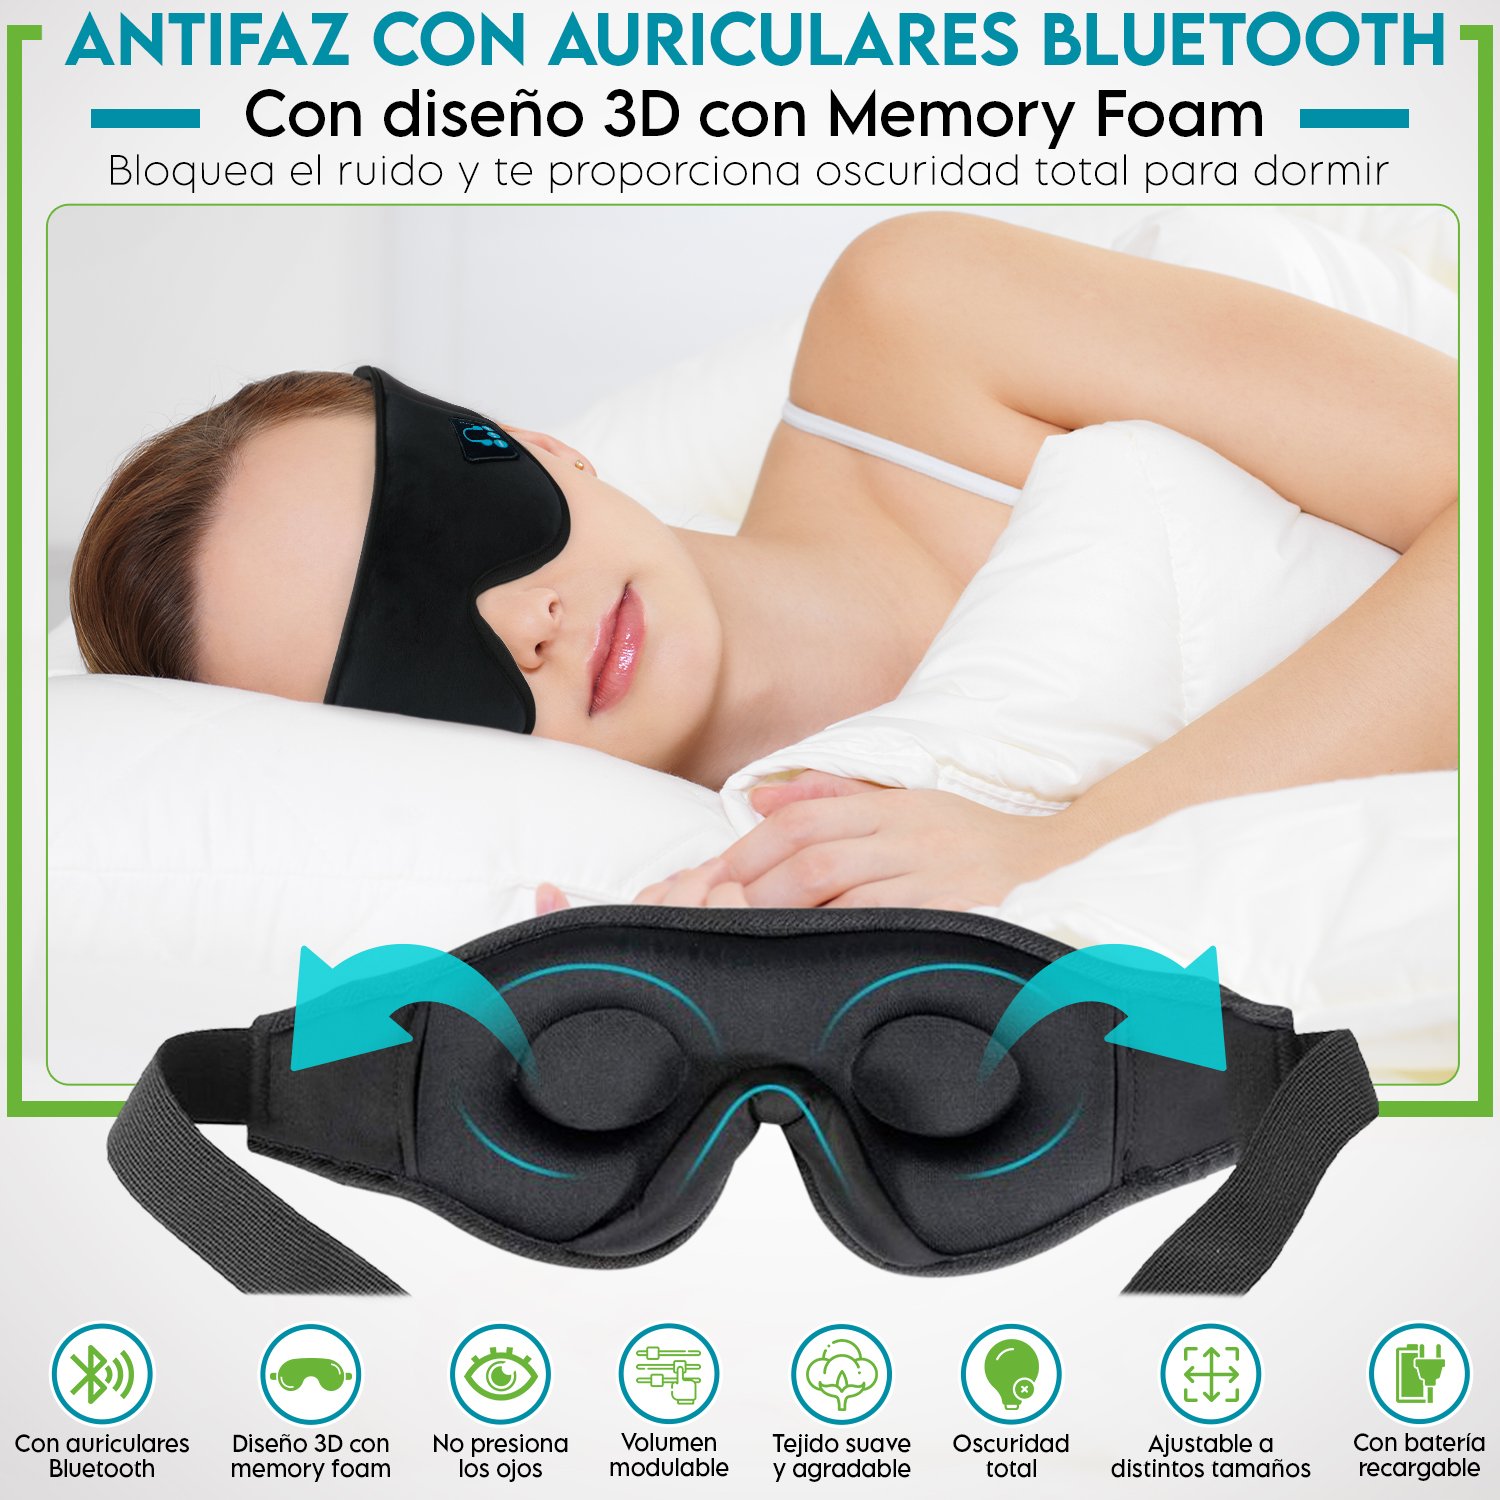 Antifaz para dormir con auriculares y conexión Bluetooth. Curiosite